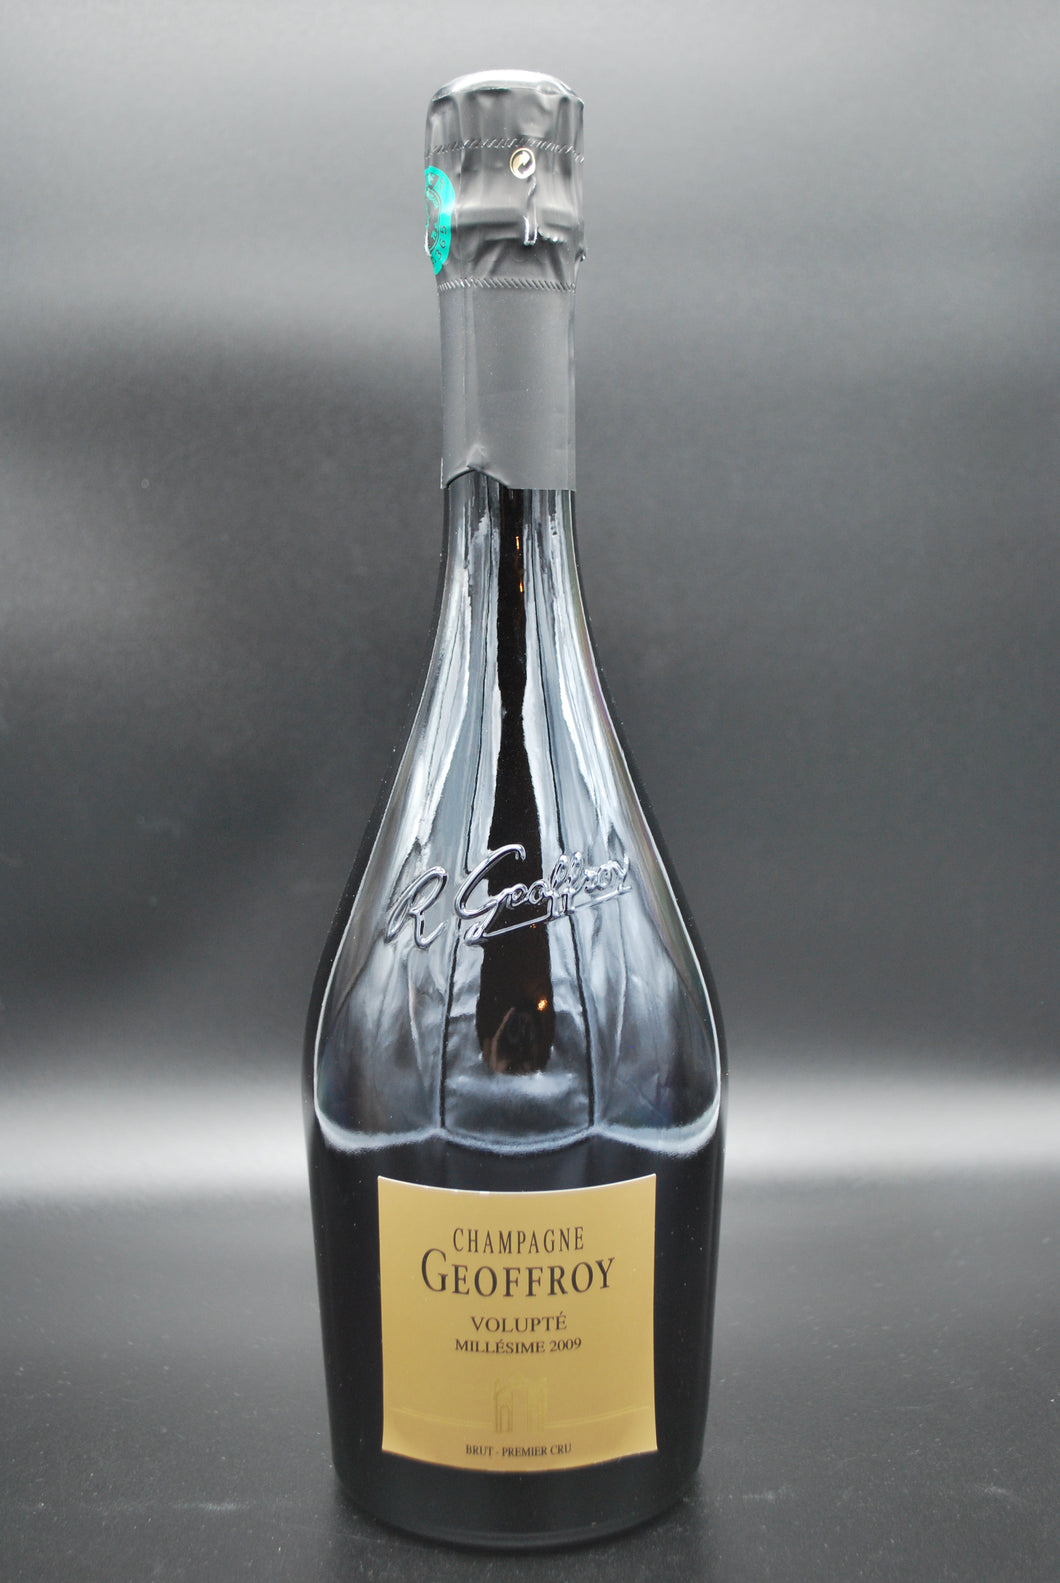 Champagne Geoffroy Volupté Millésime 2009